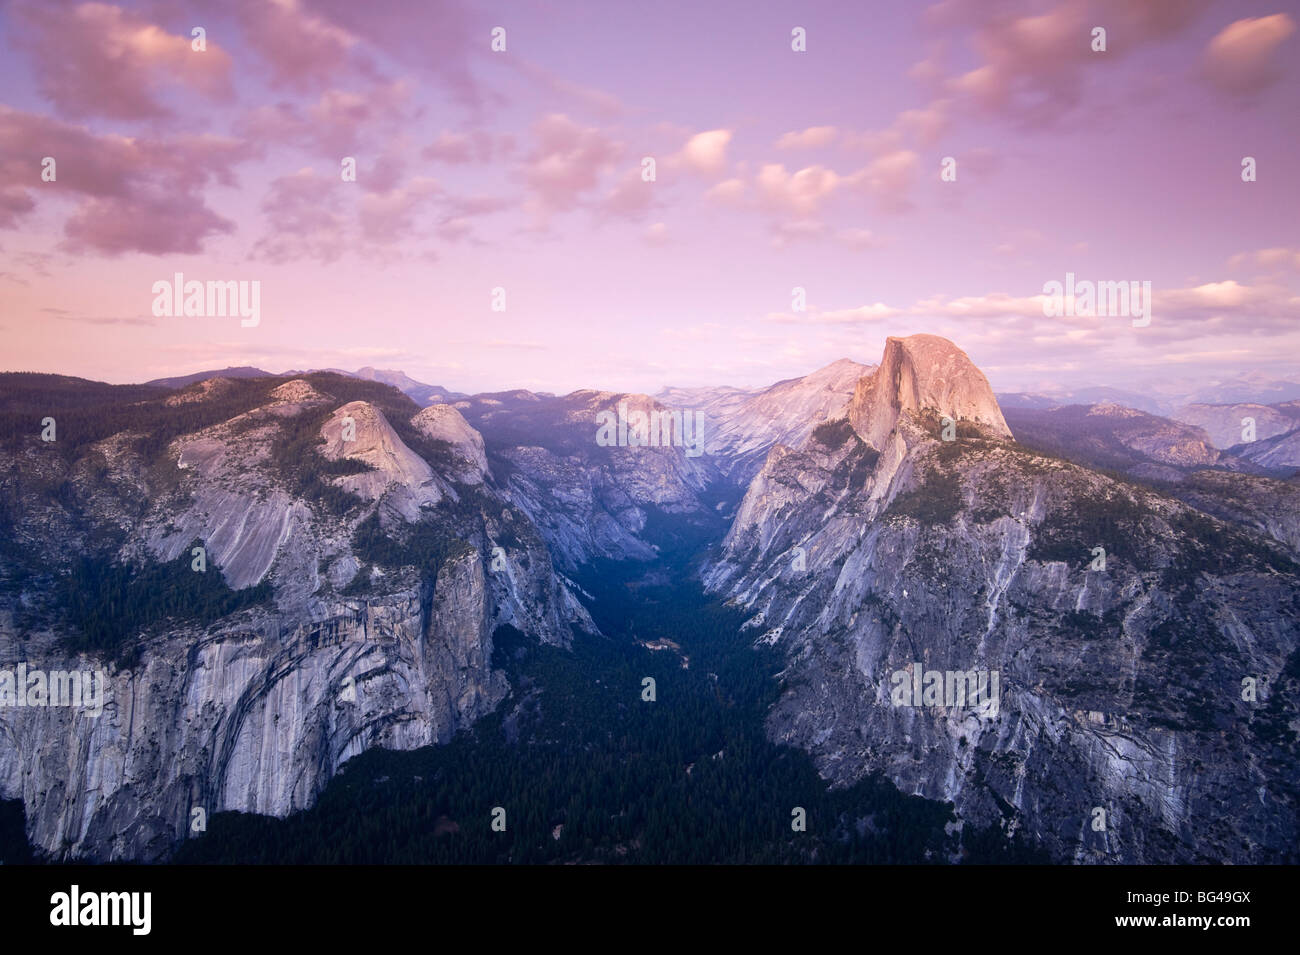 USA, California, Yosemite-Nationalpark, Glacier Point, der Half Dome Berg und Yosemite Valley anzeigen Stockfoto